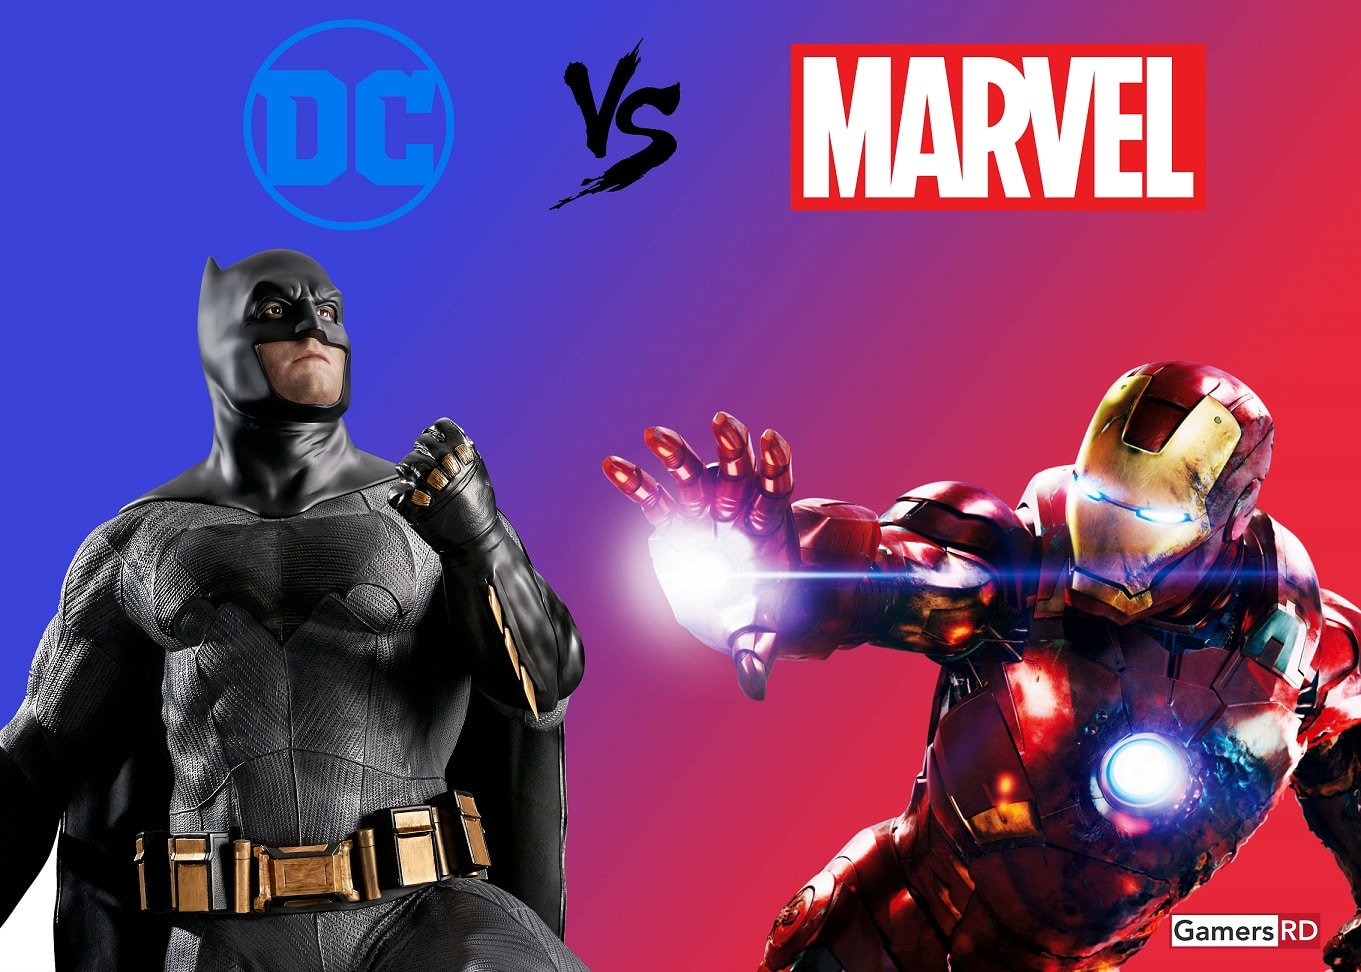 DC vs Marvel, Ed boon, NetherRealm Studios, GamersRD